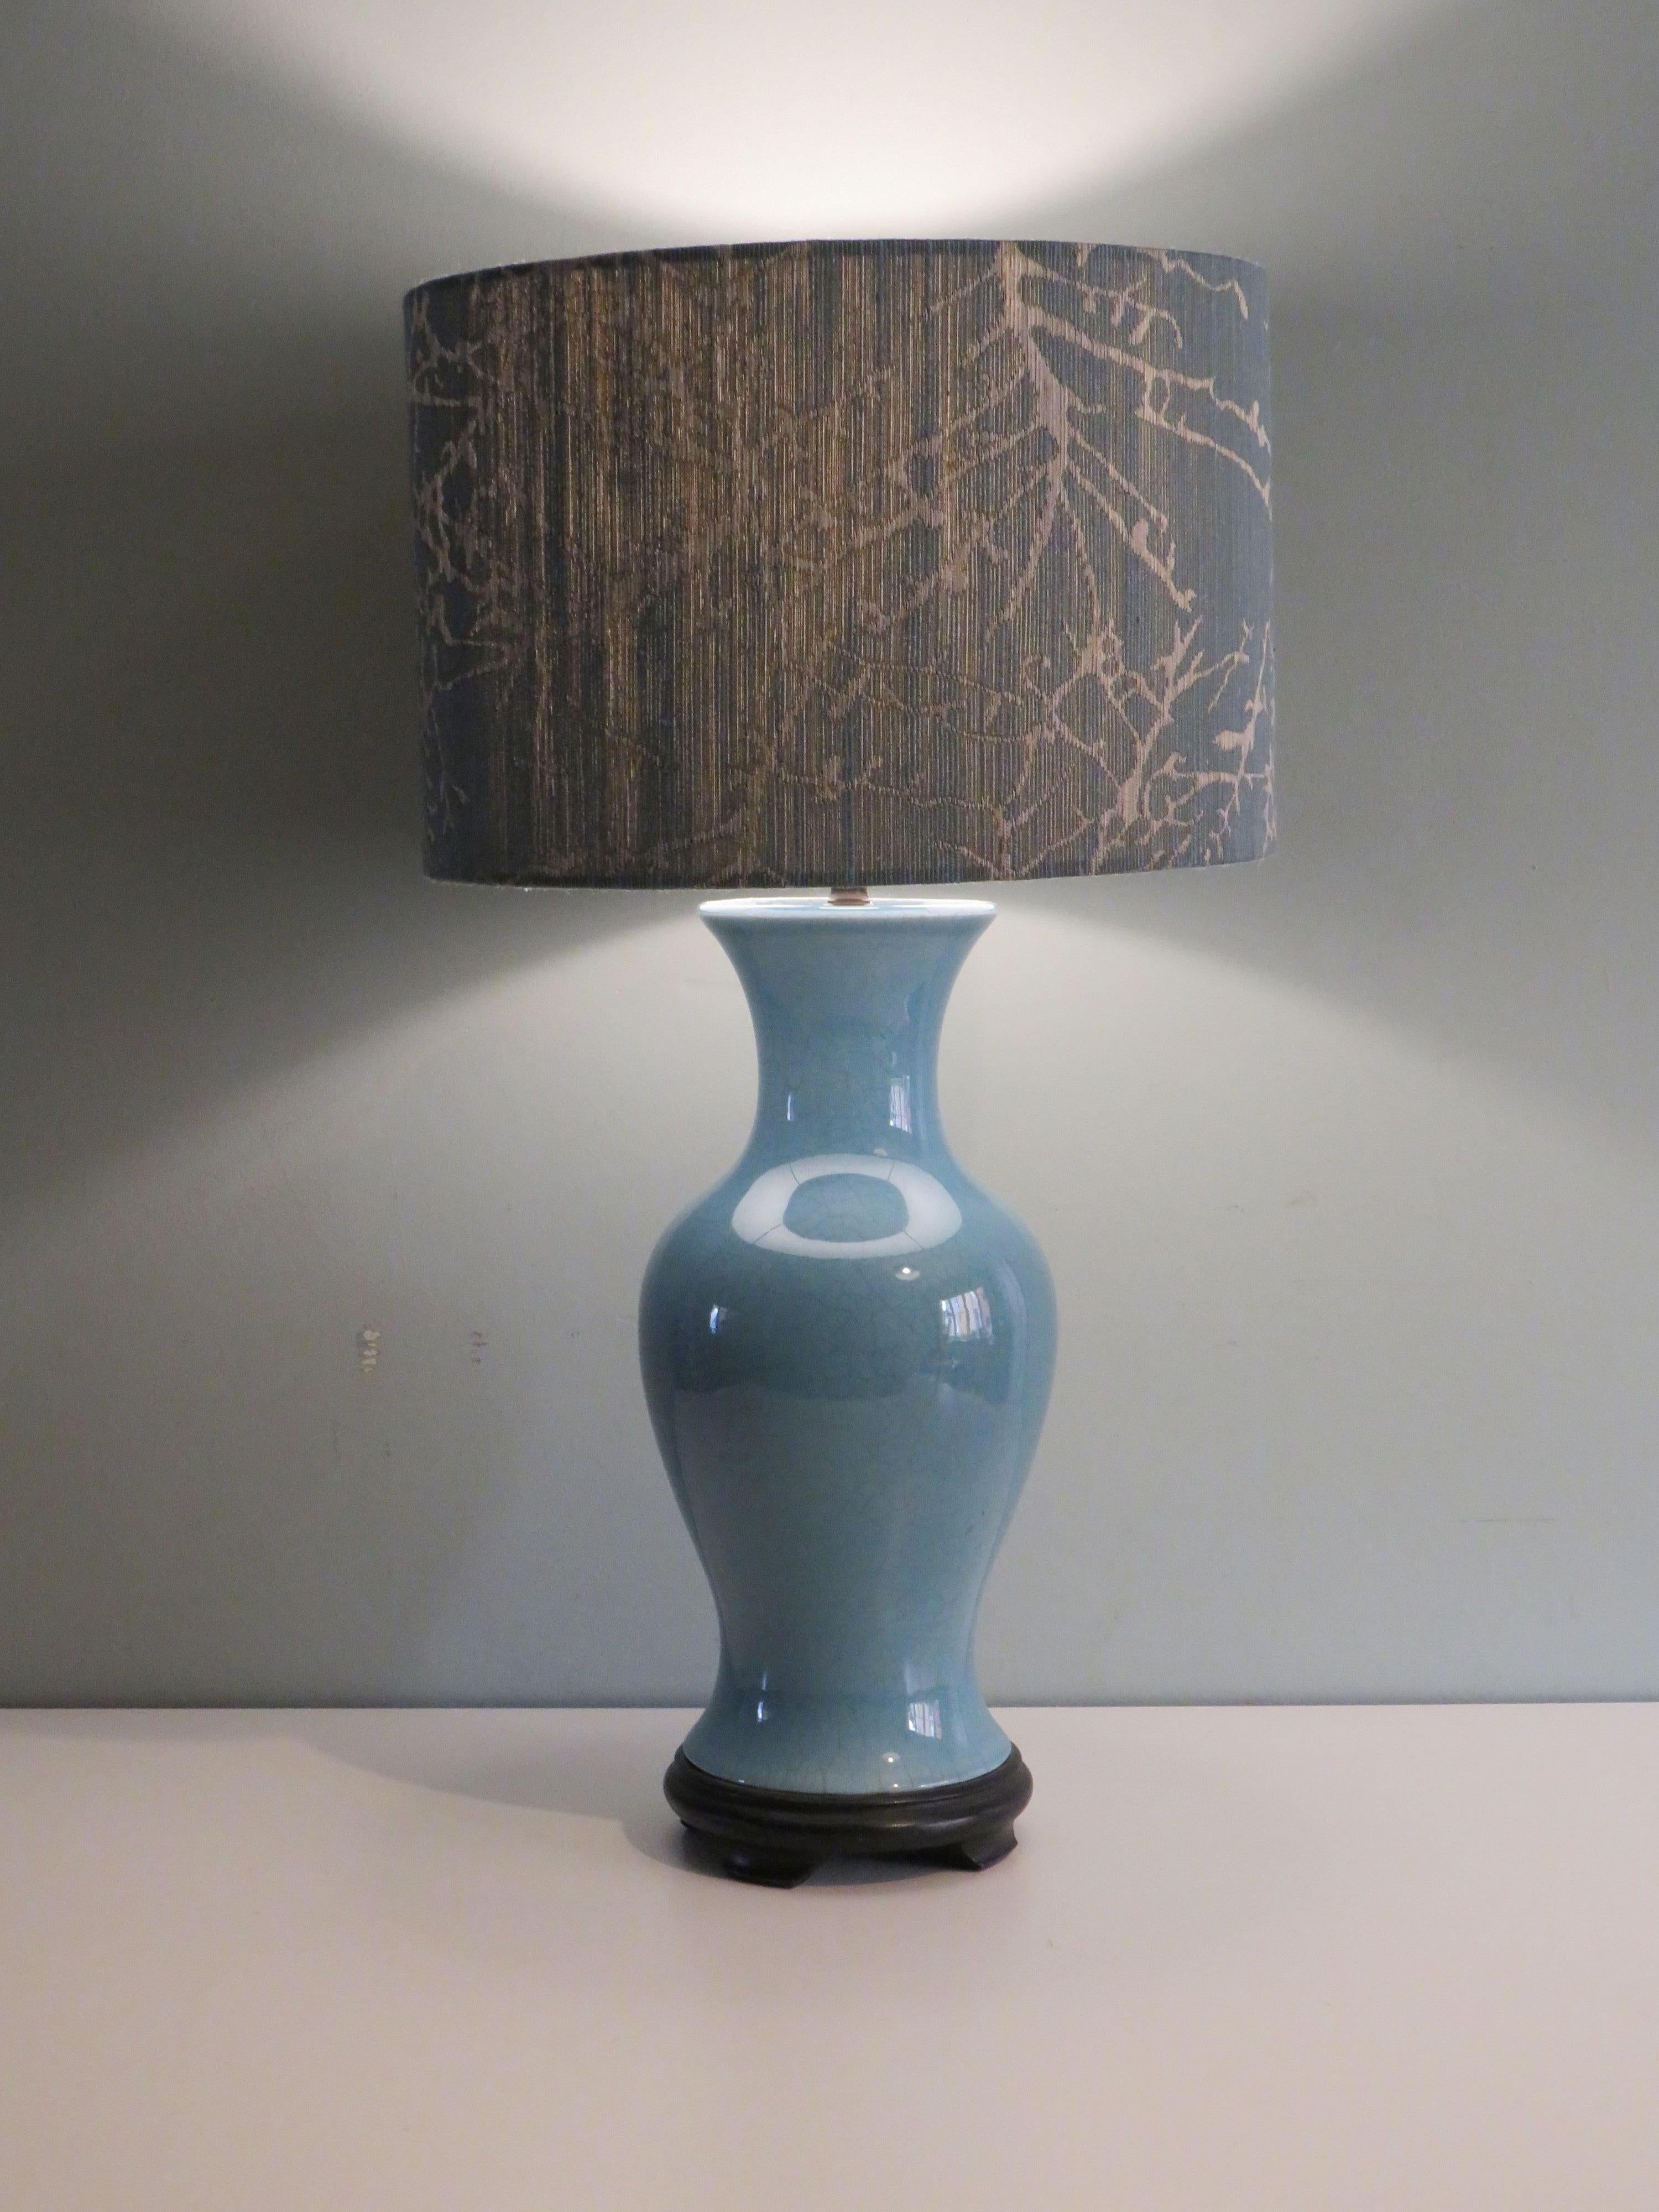 La base de la lampe en céramique émaillée gris-bleu présente un très beau craquelé et est montée sur un socle en bois noir.
La lampe est équipée d'une douille E 27 et d'un bouton d'allumage et d'extinction. Elle est en très bon état de